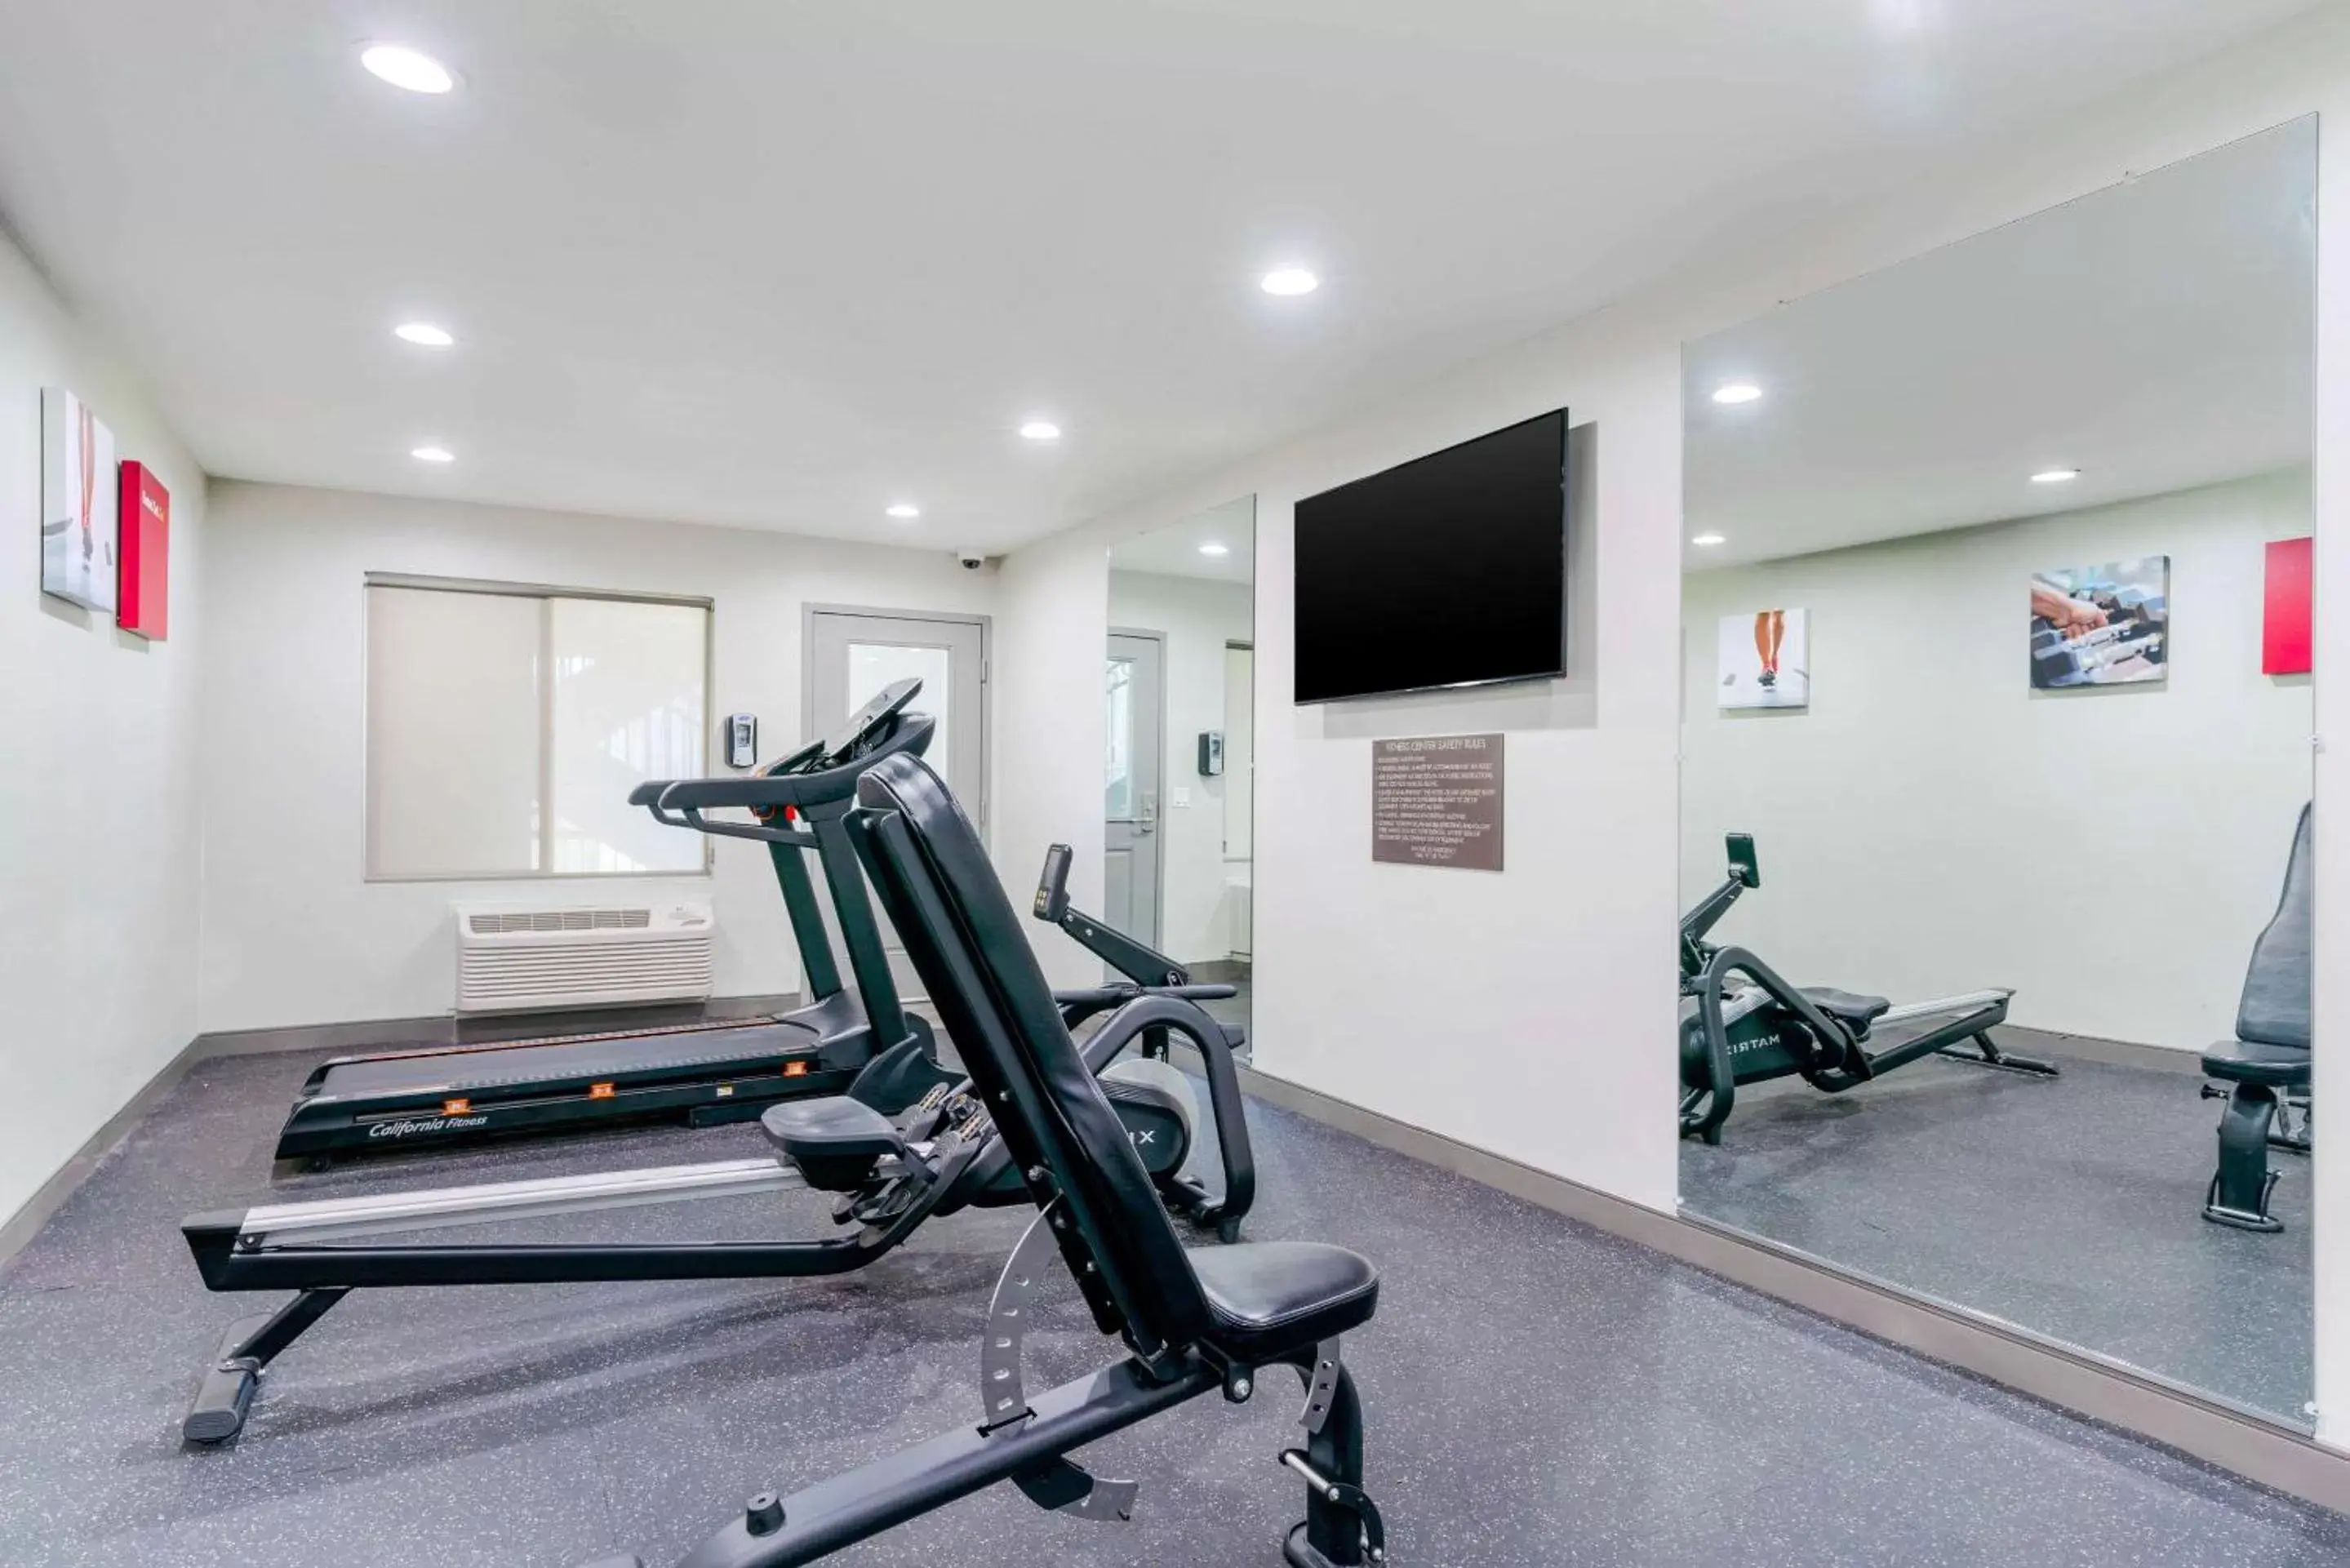 Fitness centre/facilities, Fitness Center/Facilities in Comfort Inn Antioch